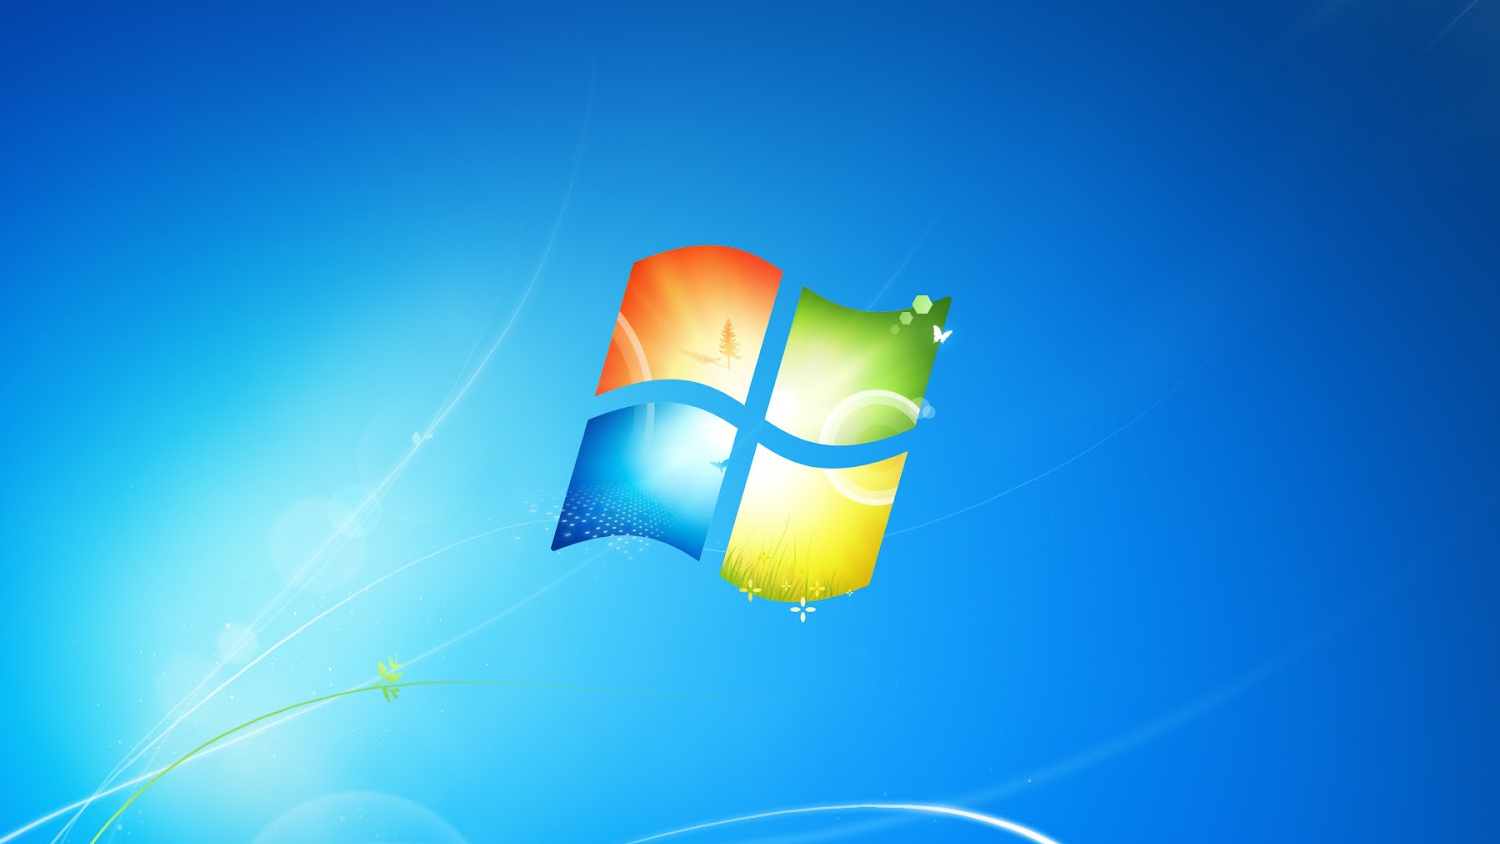 Download dos jogos do Windows 7 para Windows 10